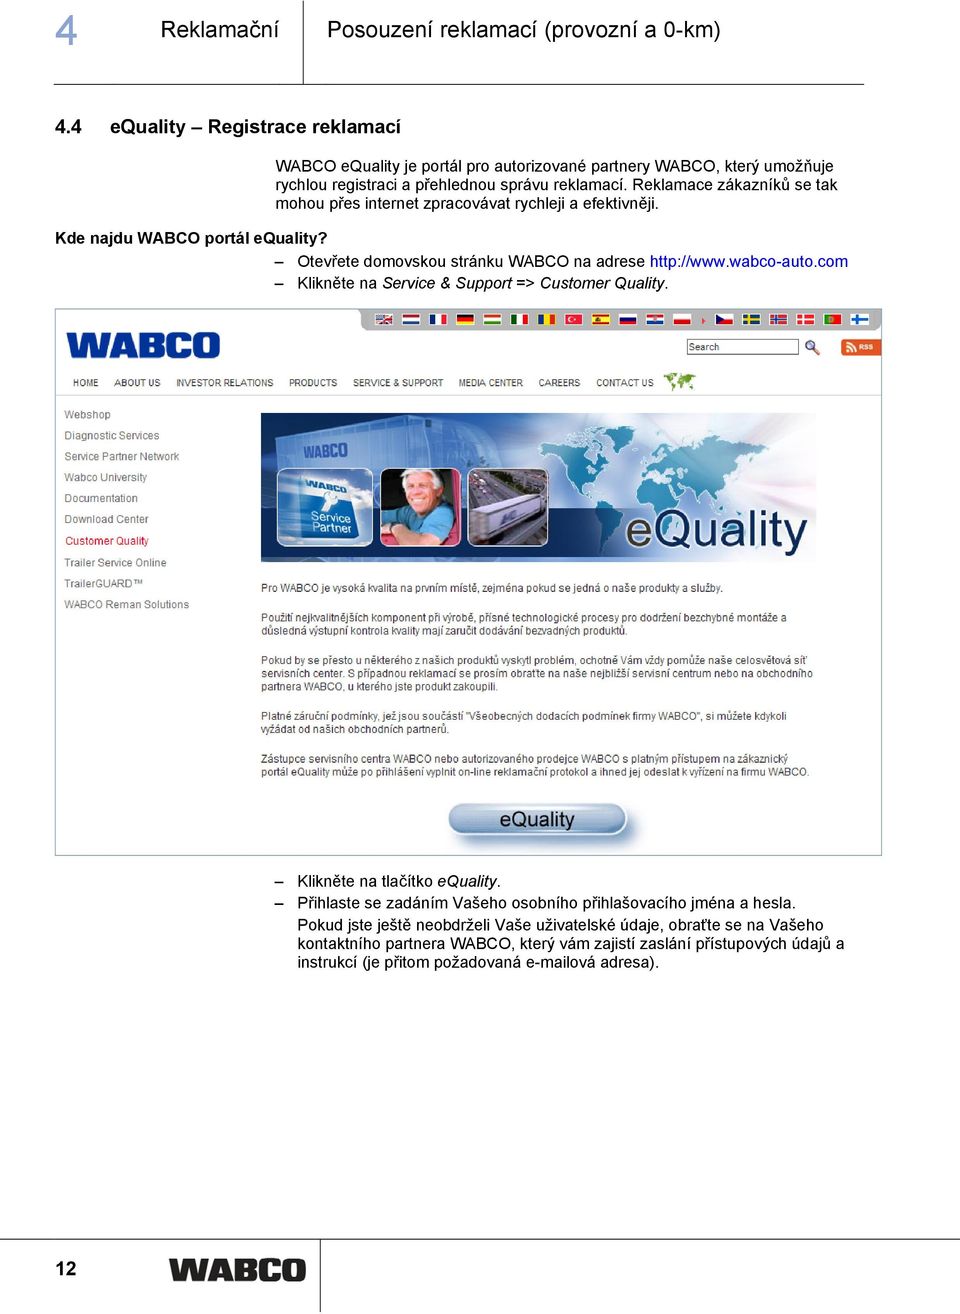 Reklamace zákazníků se tak mohou přes internet zpracovávat rychleji a efektivněji. Kde najdu WABCO portál equality? Otevřete domovskou stránku WABCO na adrese http://www.wabco-auto.